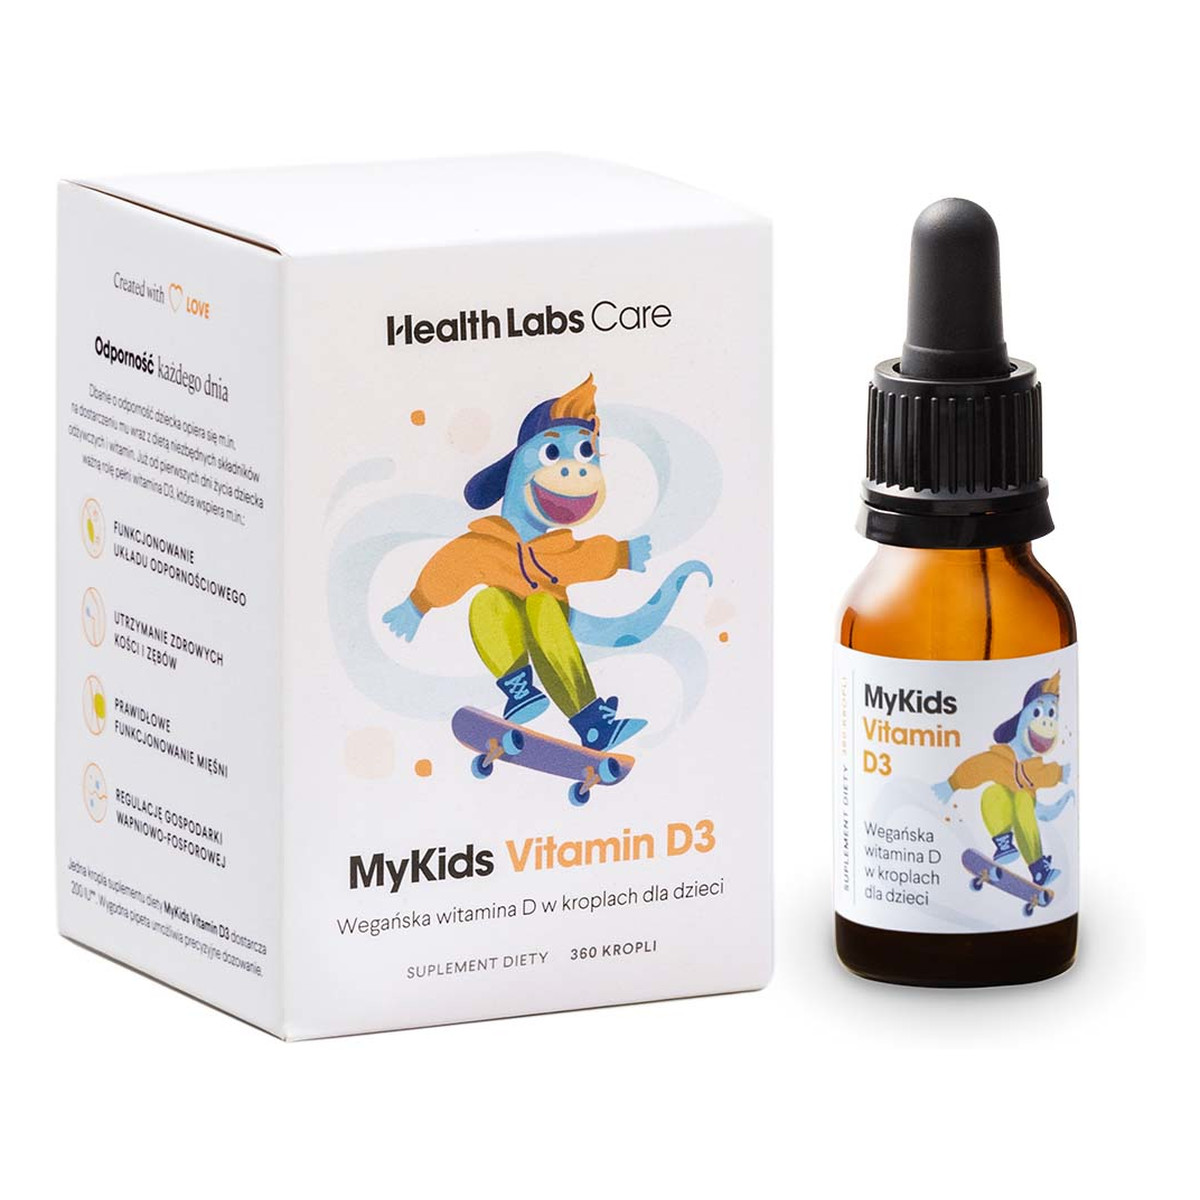 HealthLabs Mykids vitamin d3 wegańska witamina d w kropelkach dla dzieci suplement diety 9,7 ml